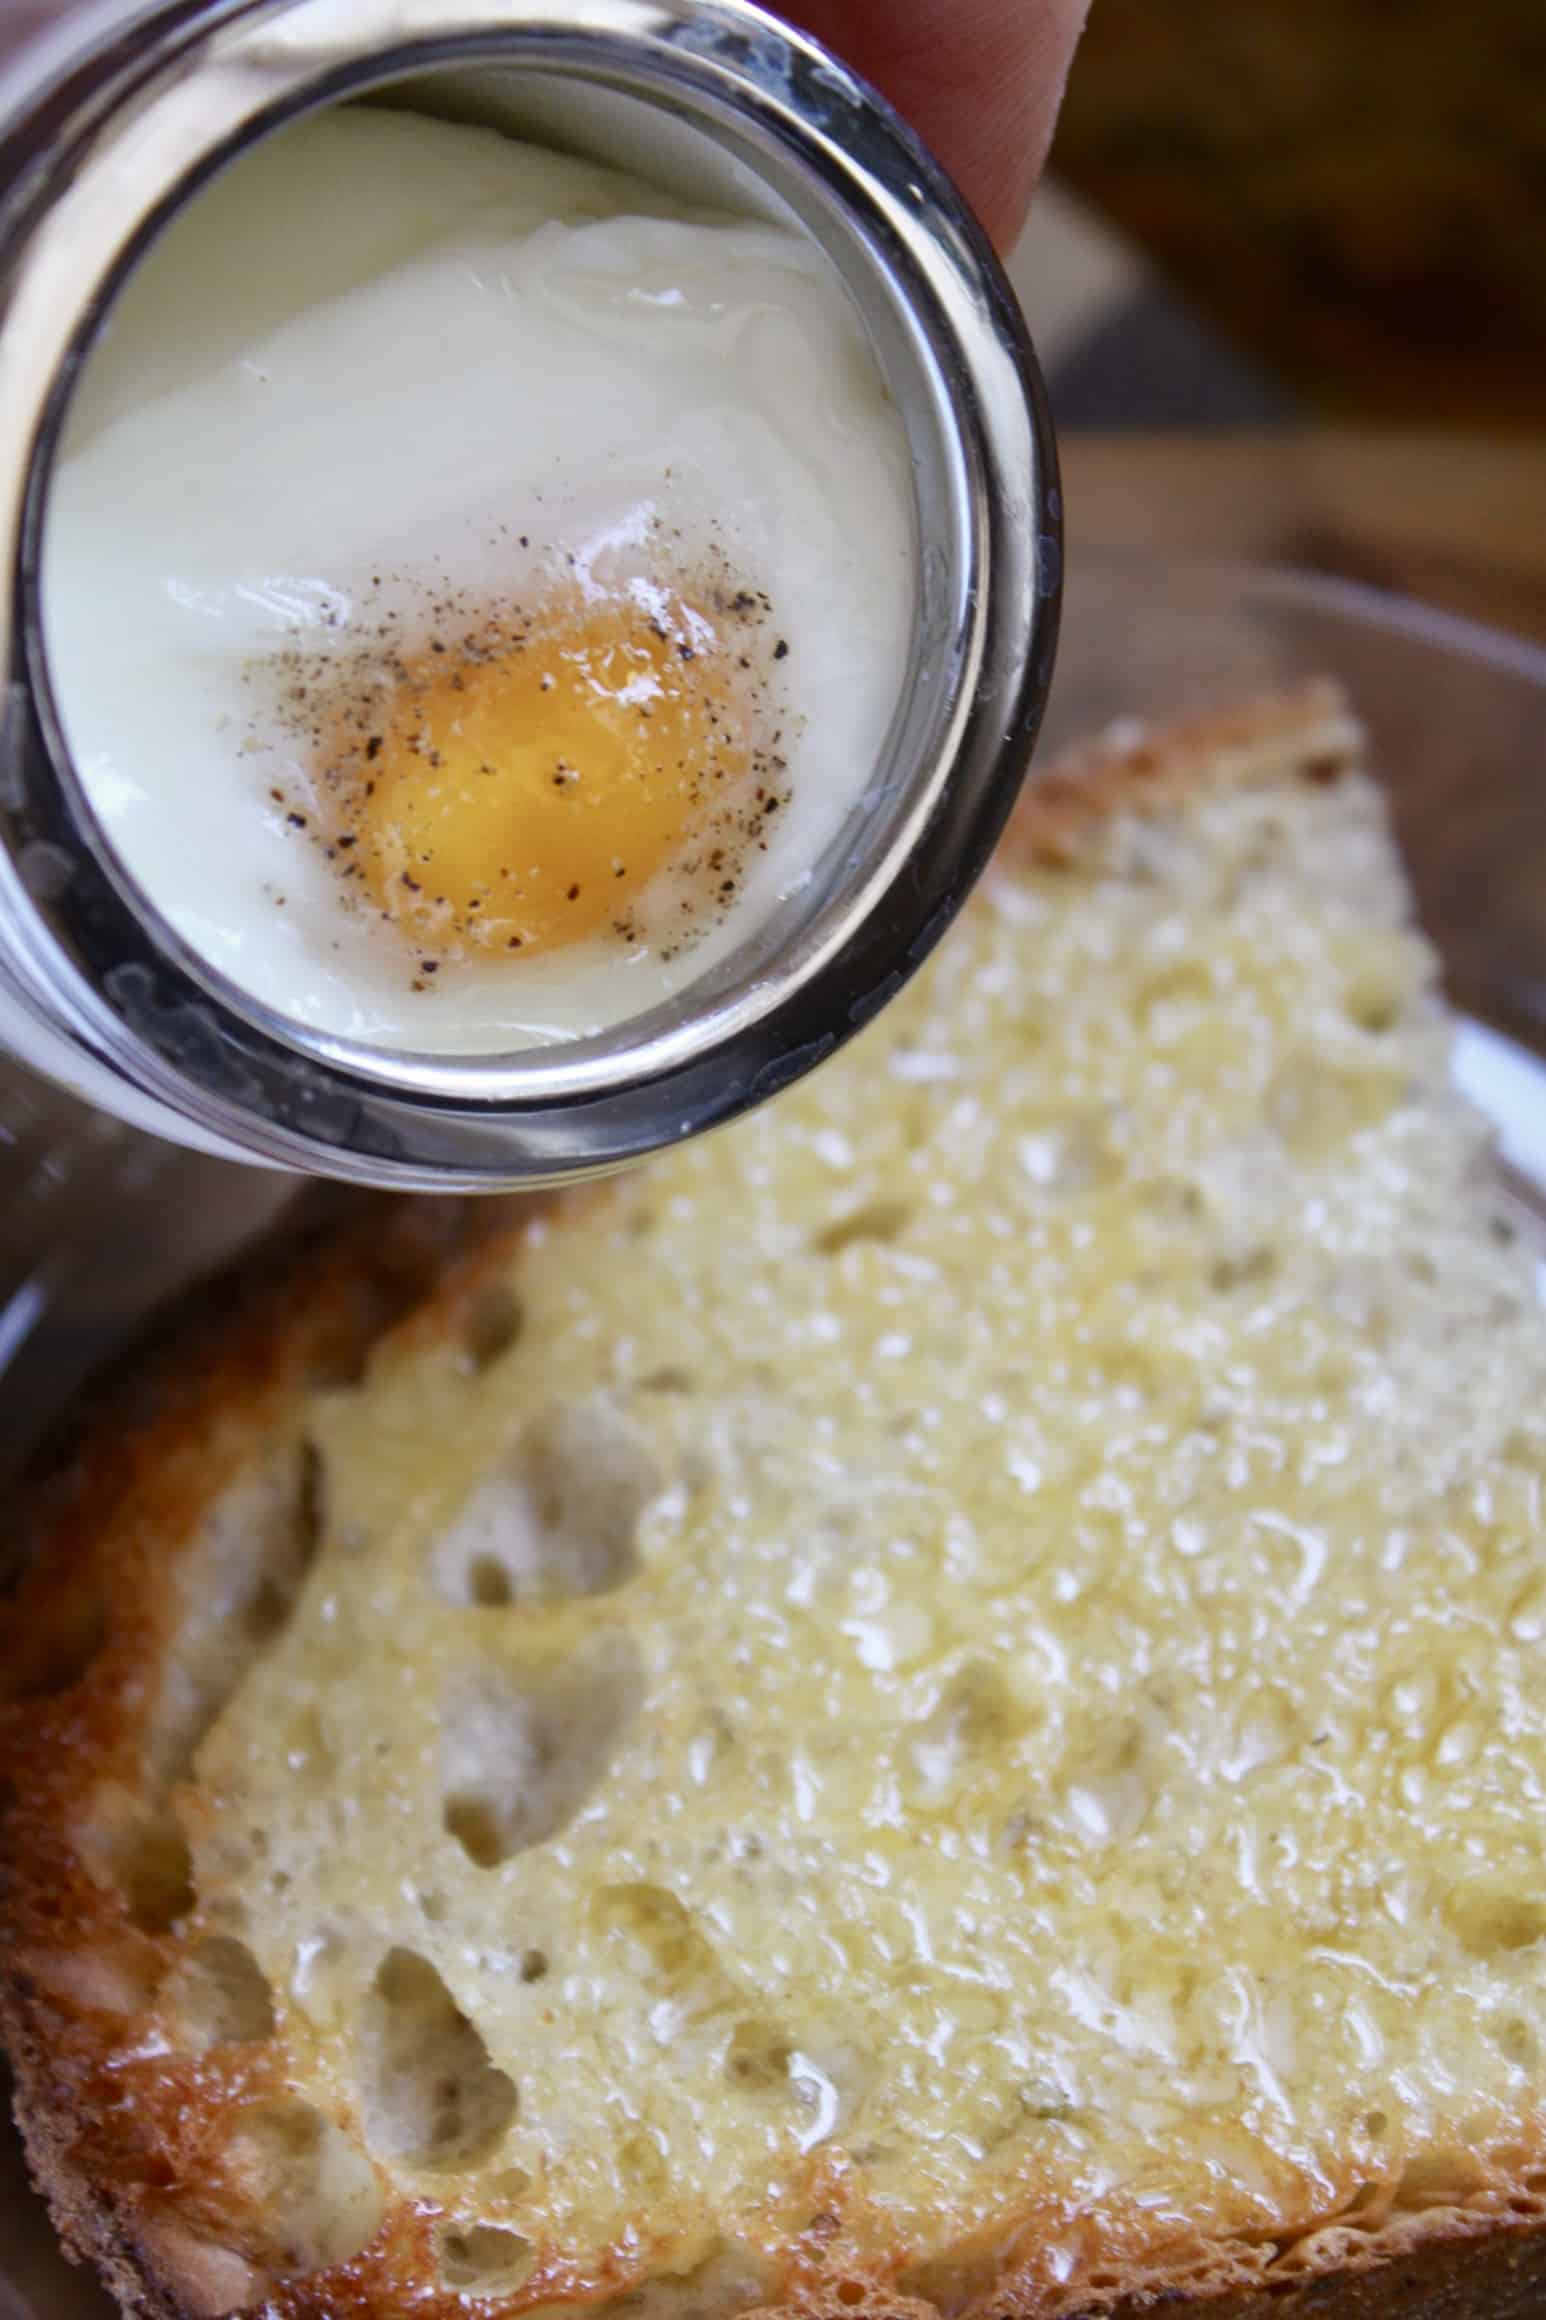 Adding coddled egg to toast